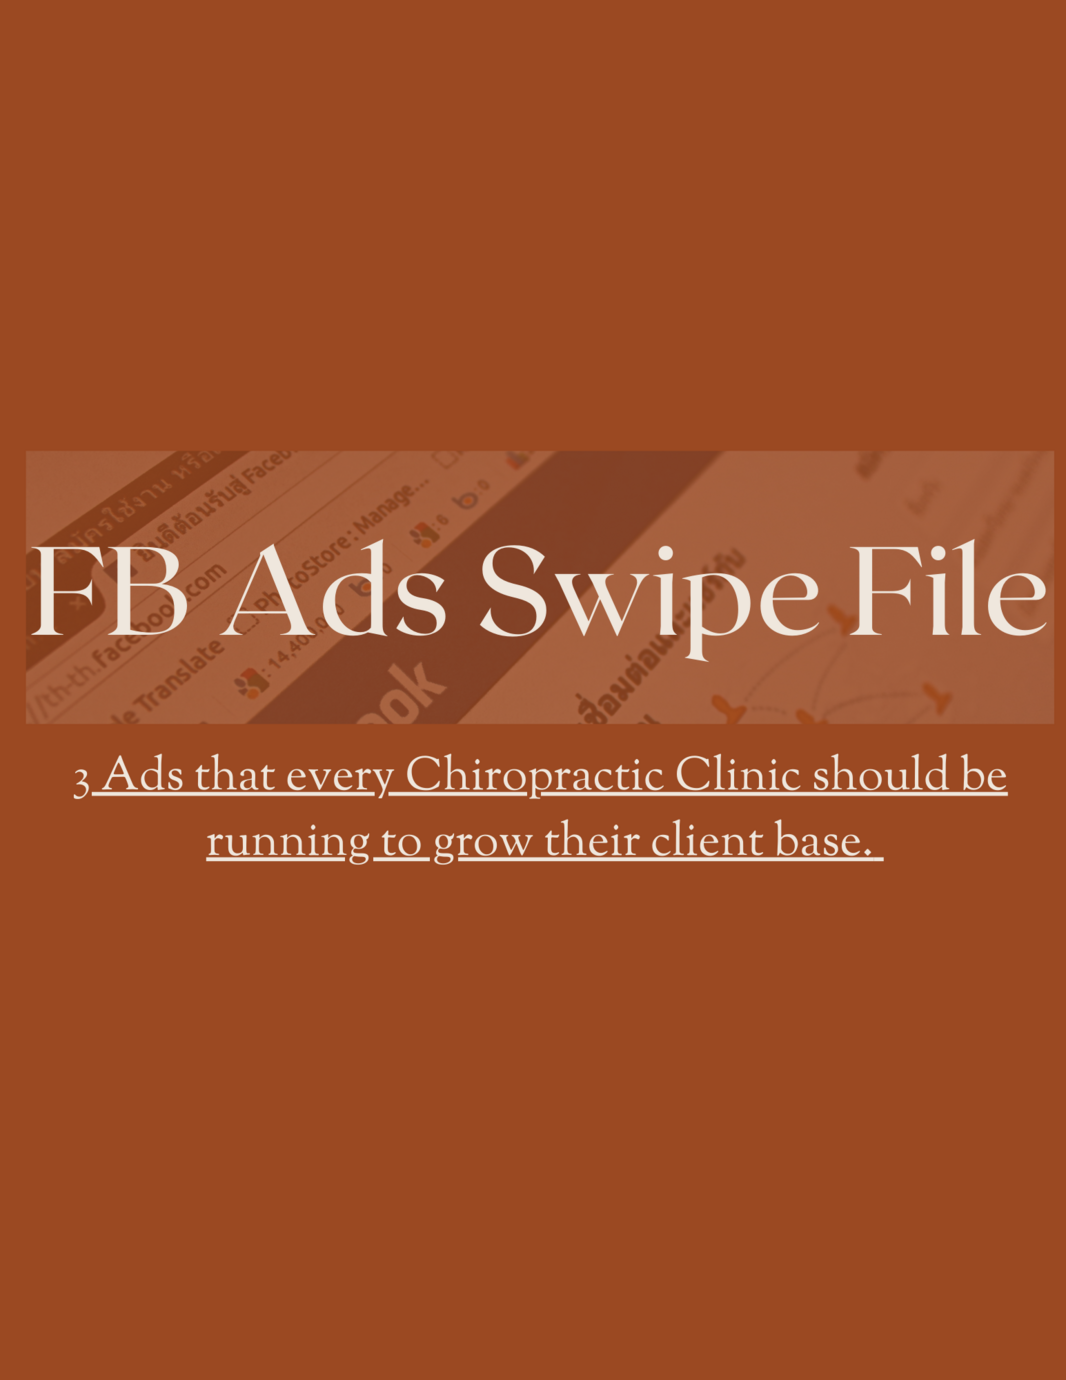 FB Ads Swipe File Cover